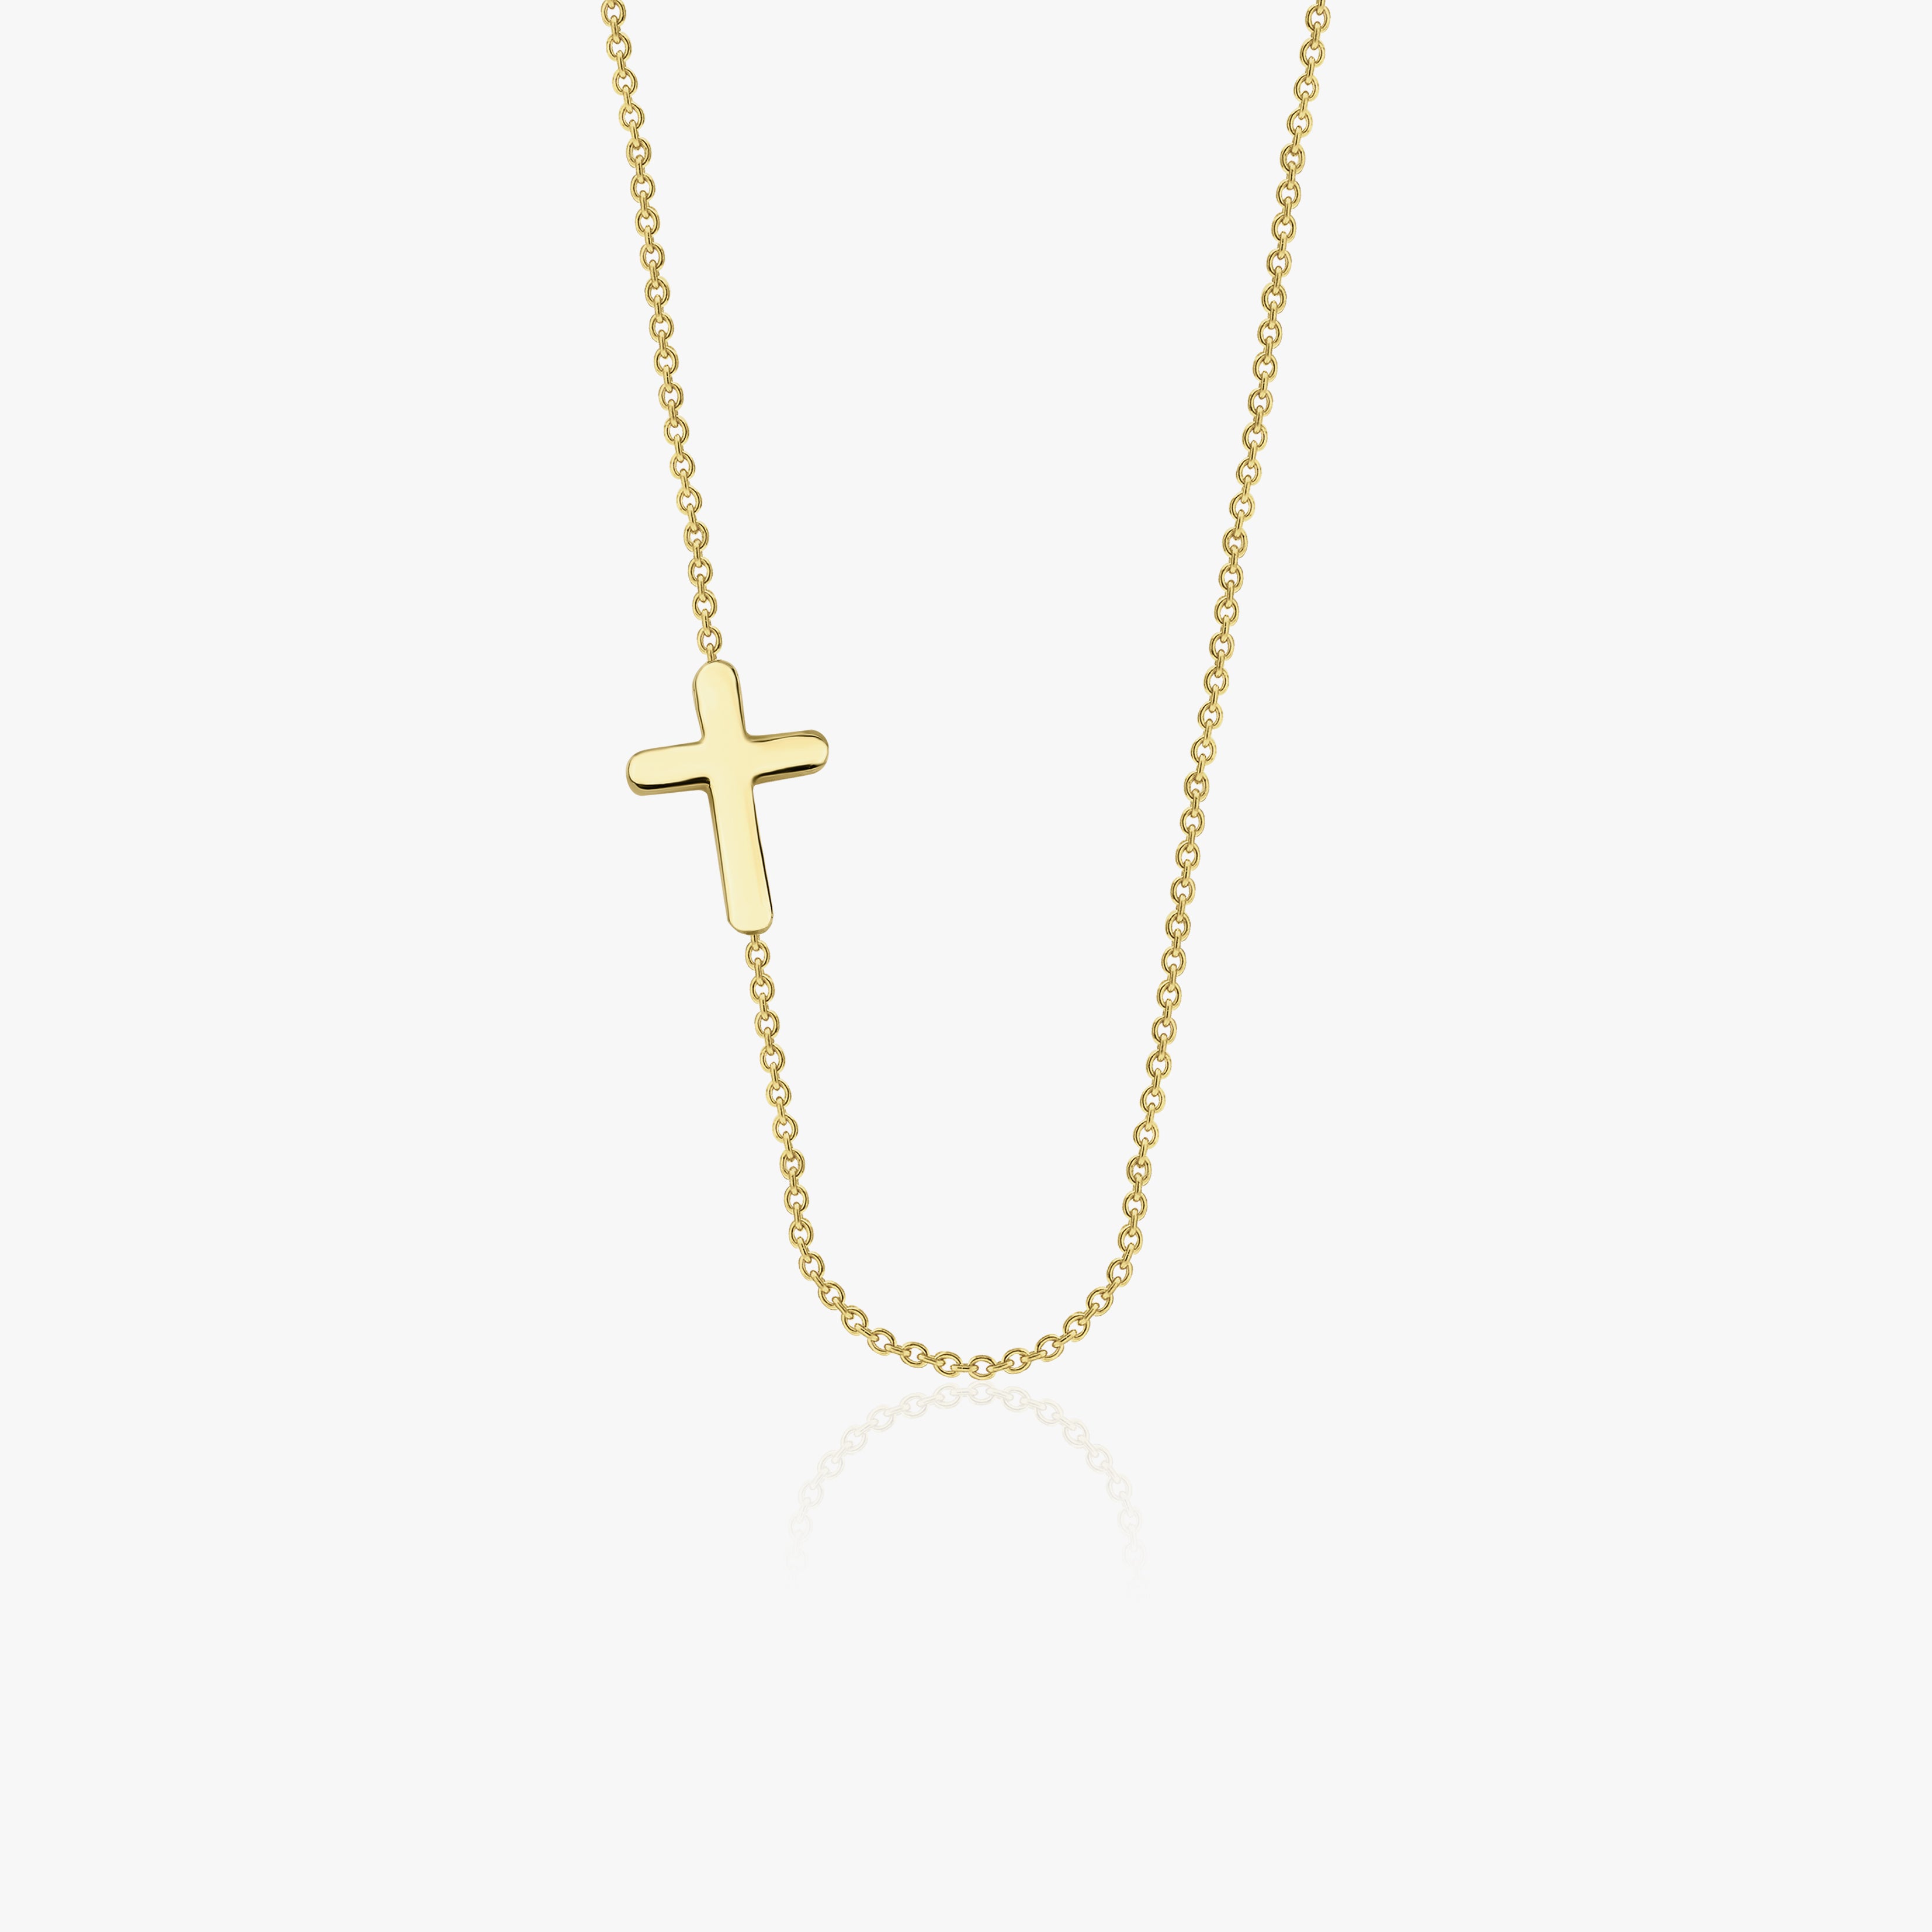 Sideways Cross Necklace in 14K Gold